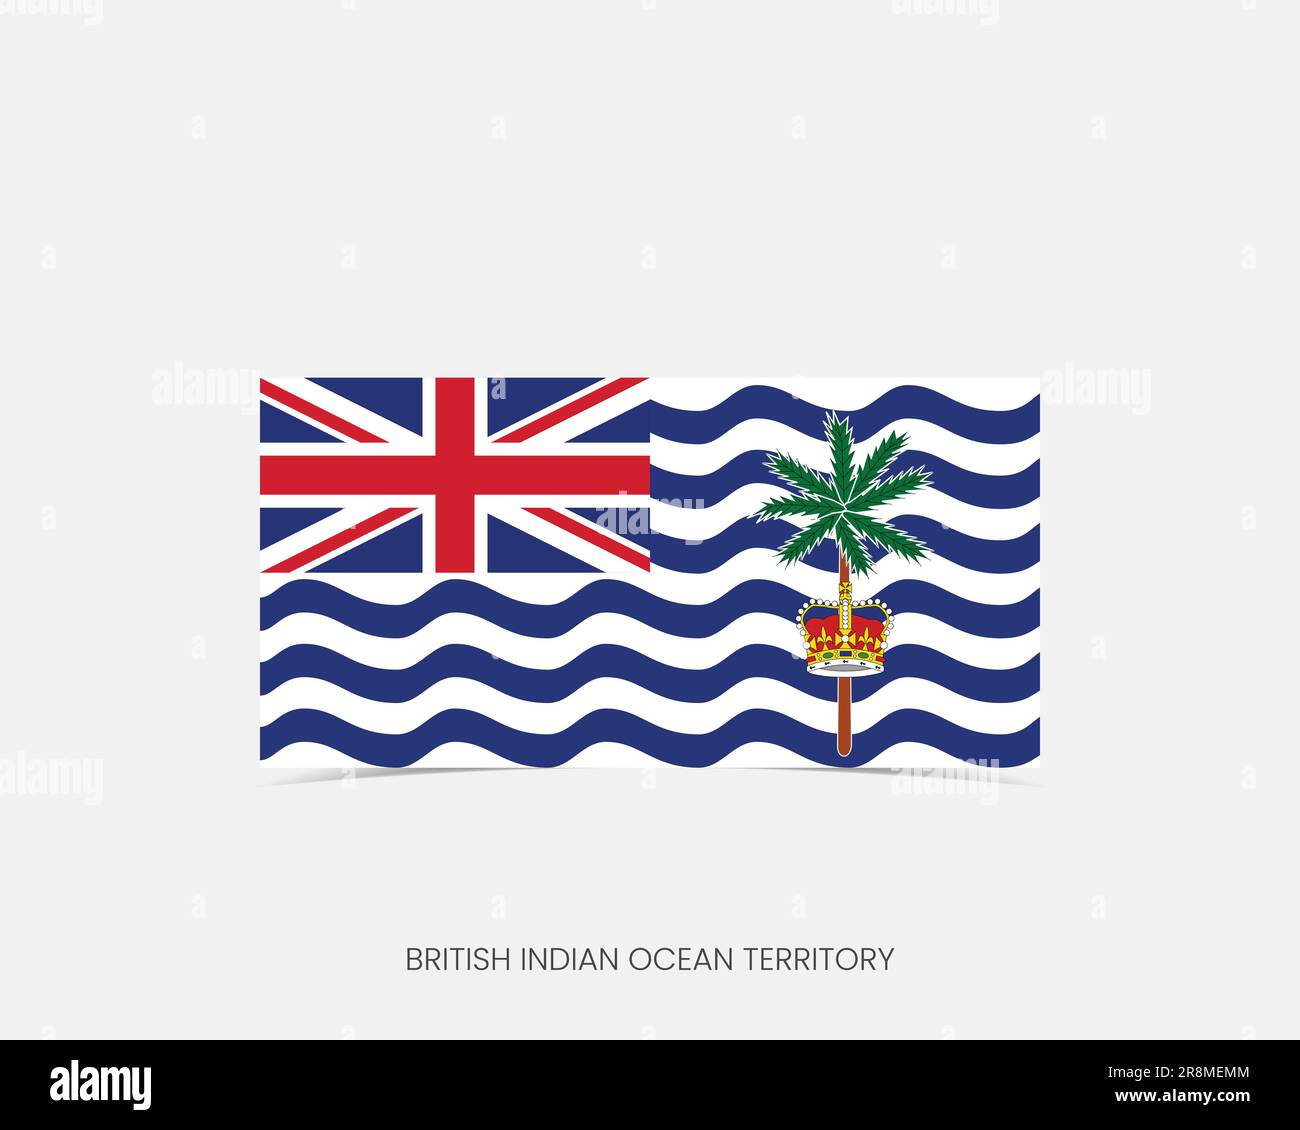 Drapeau rectangle de l'océan Indien britannique avec ombre. Illustration de Vecteur